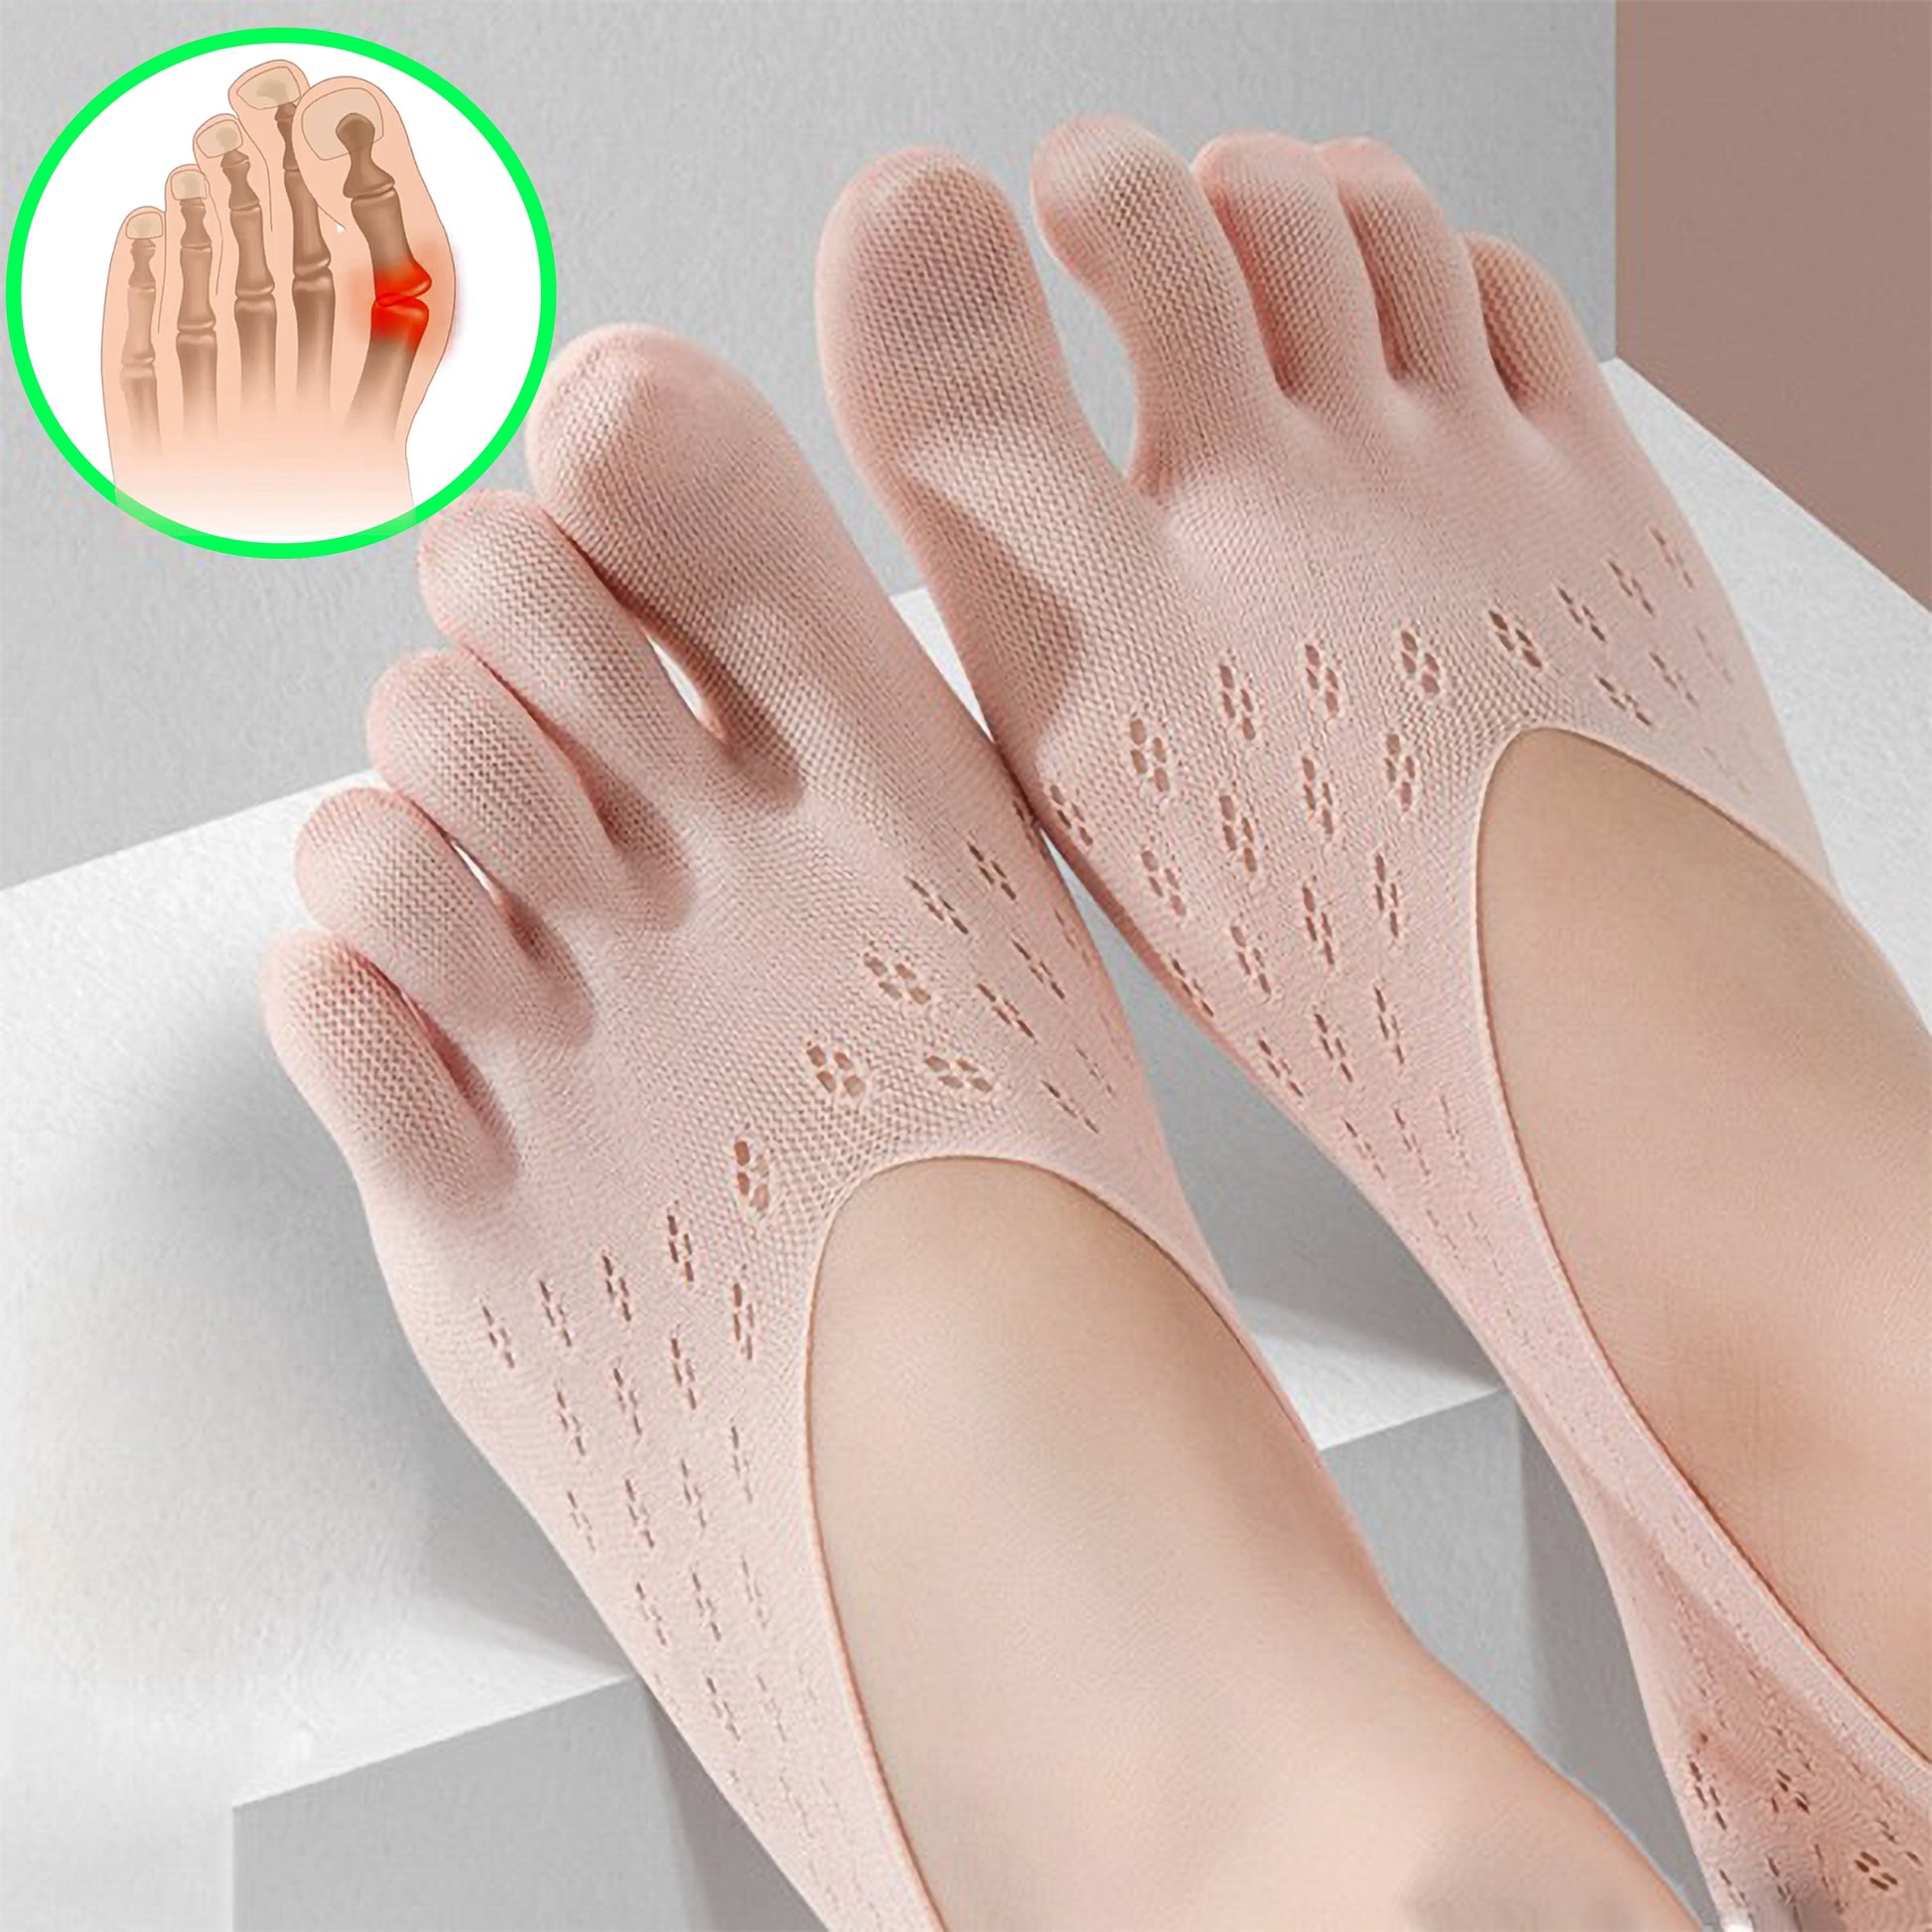 Buy DIRTS Foot Alignment Socks Five Toe Separator